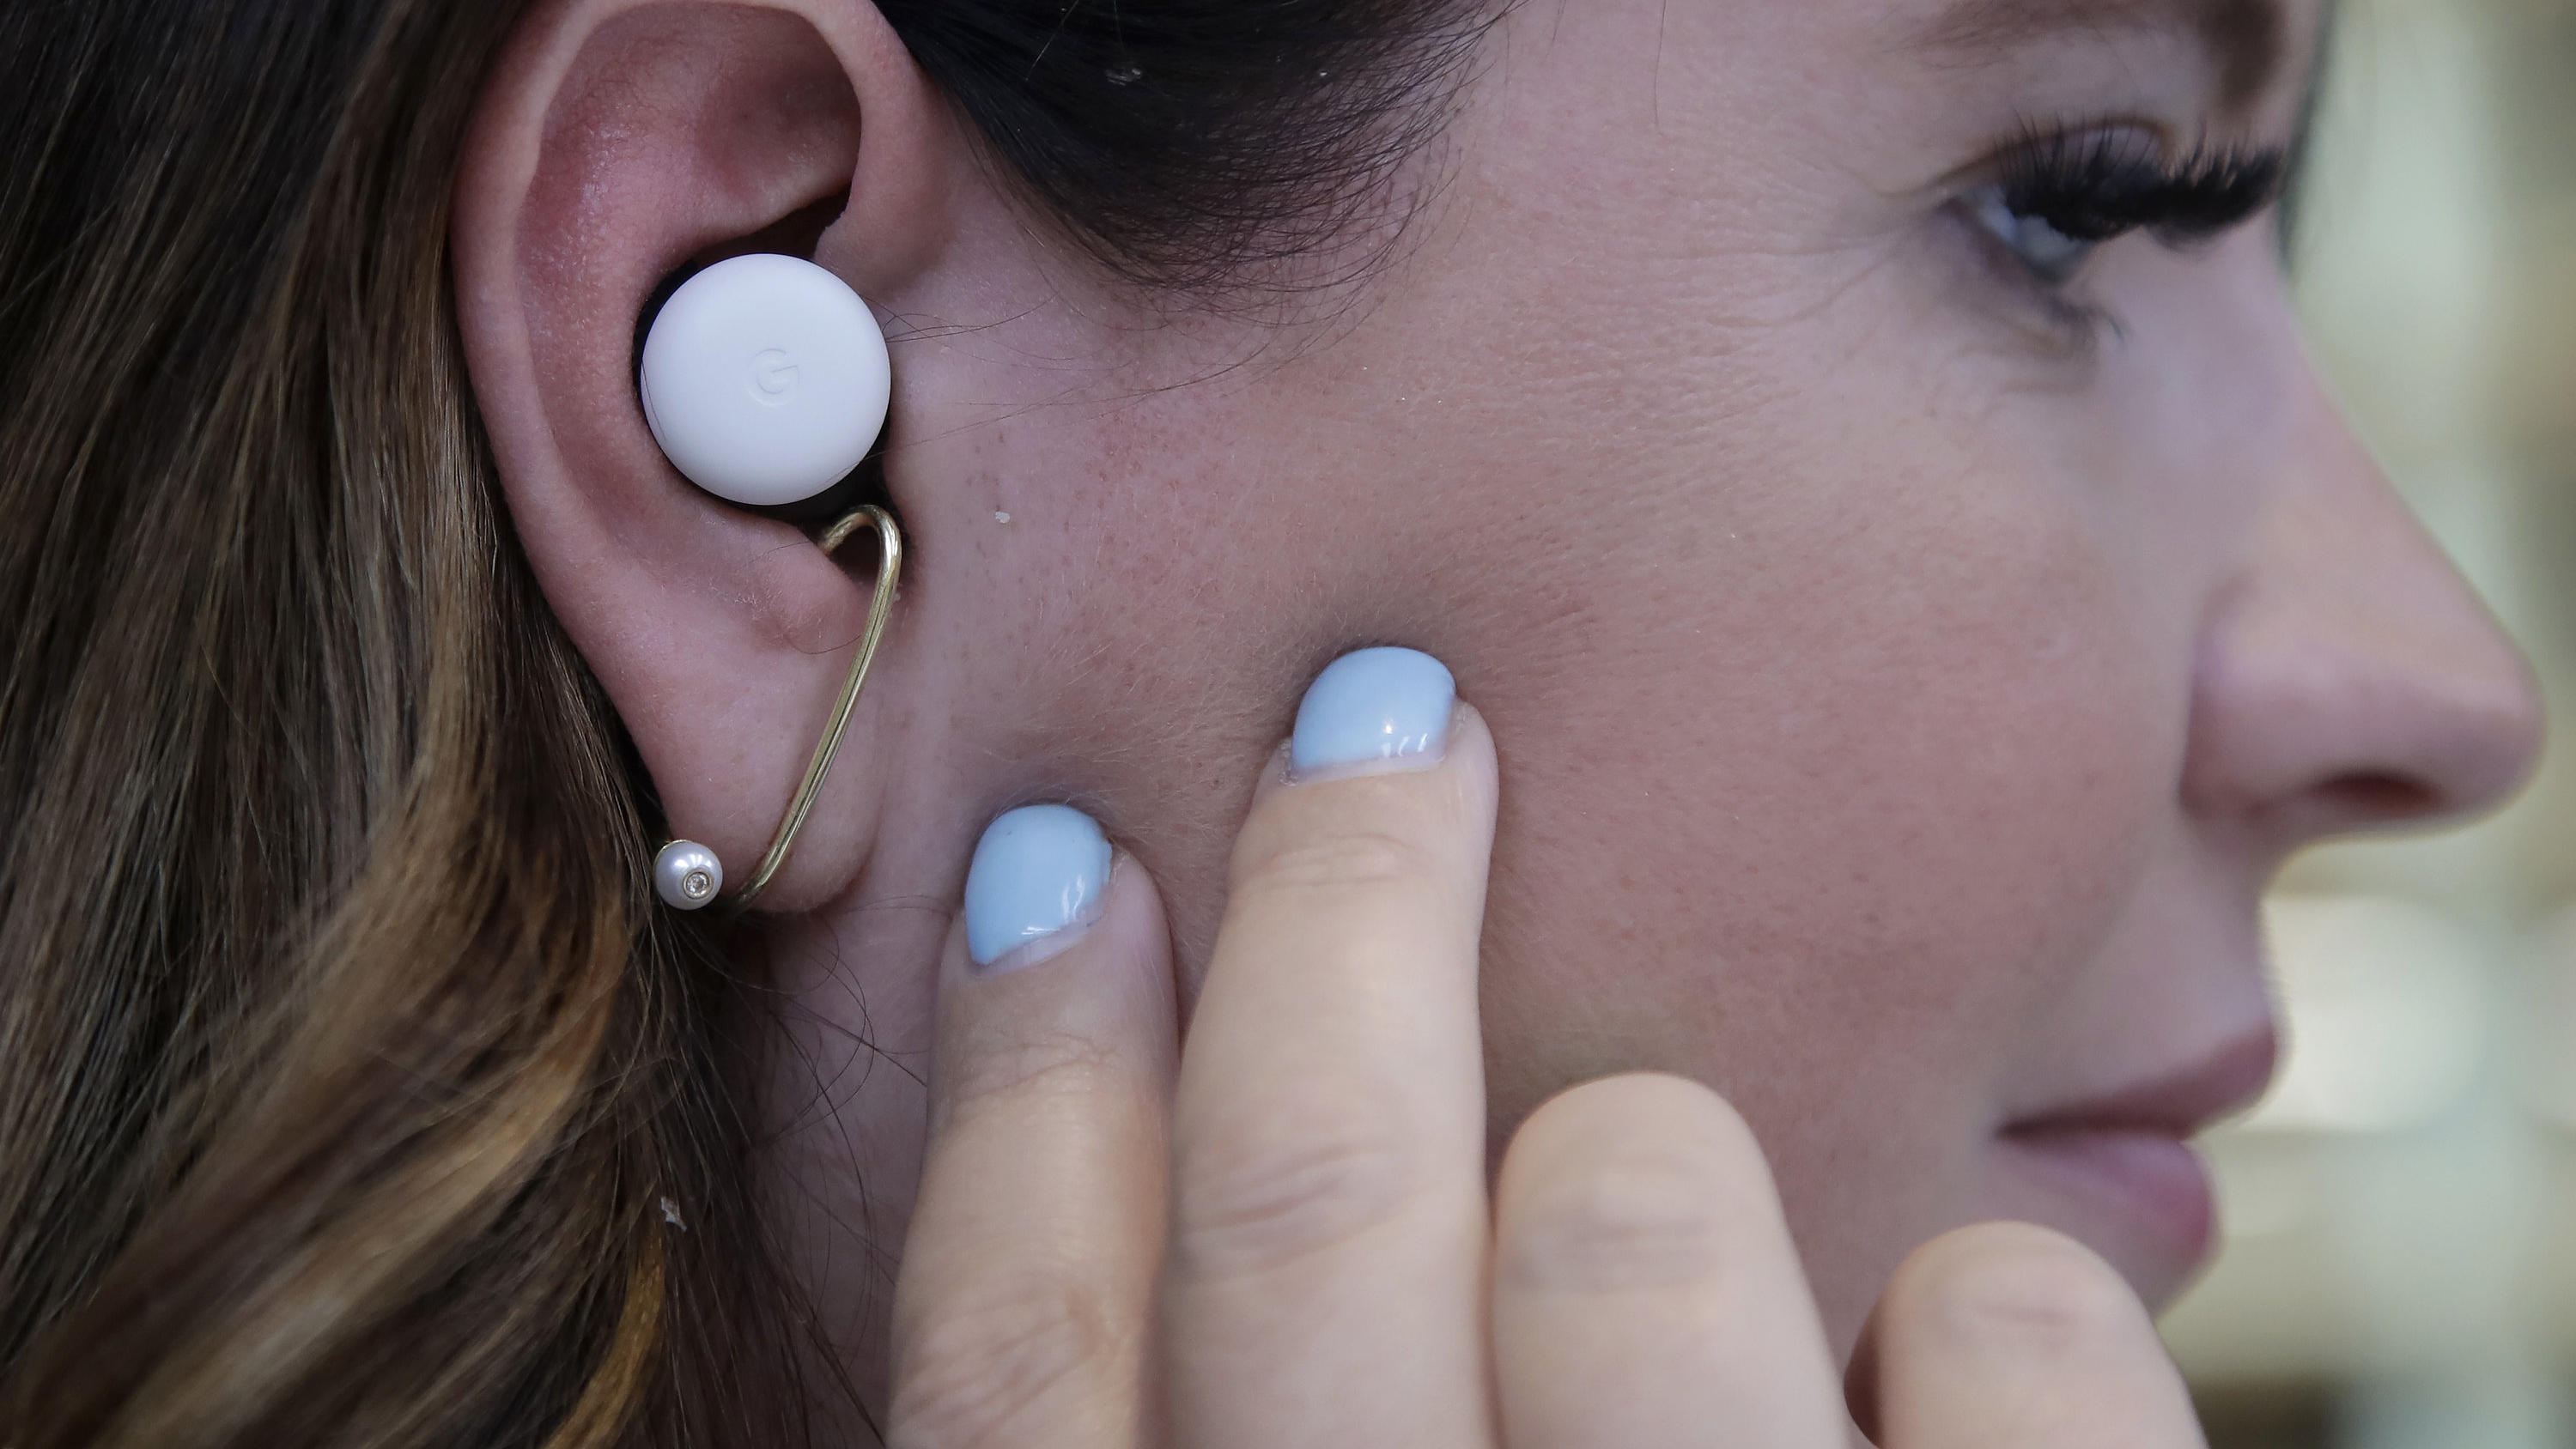 24.09.2019, USA, Mountain View: Isabelle Olsson, Industriedesignerin bei Google, trägt die neuen Ohrhörer. Auf einer Veranstaltung in New York präsentierte Google neuartige drahtlose Ohrhörer («Pixel Buds»), die im kommenden Jahr gegen die Airpods vo